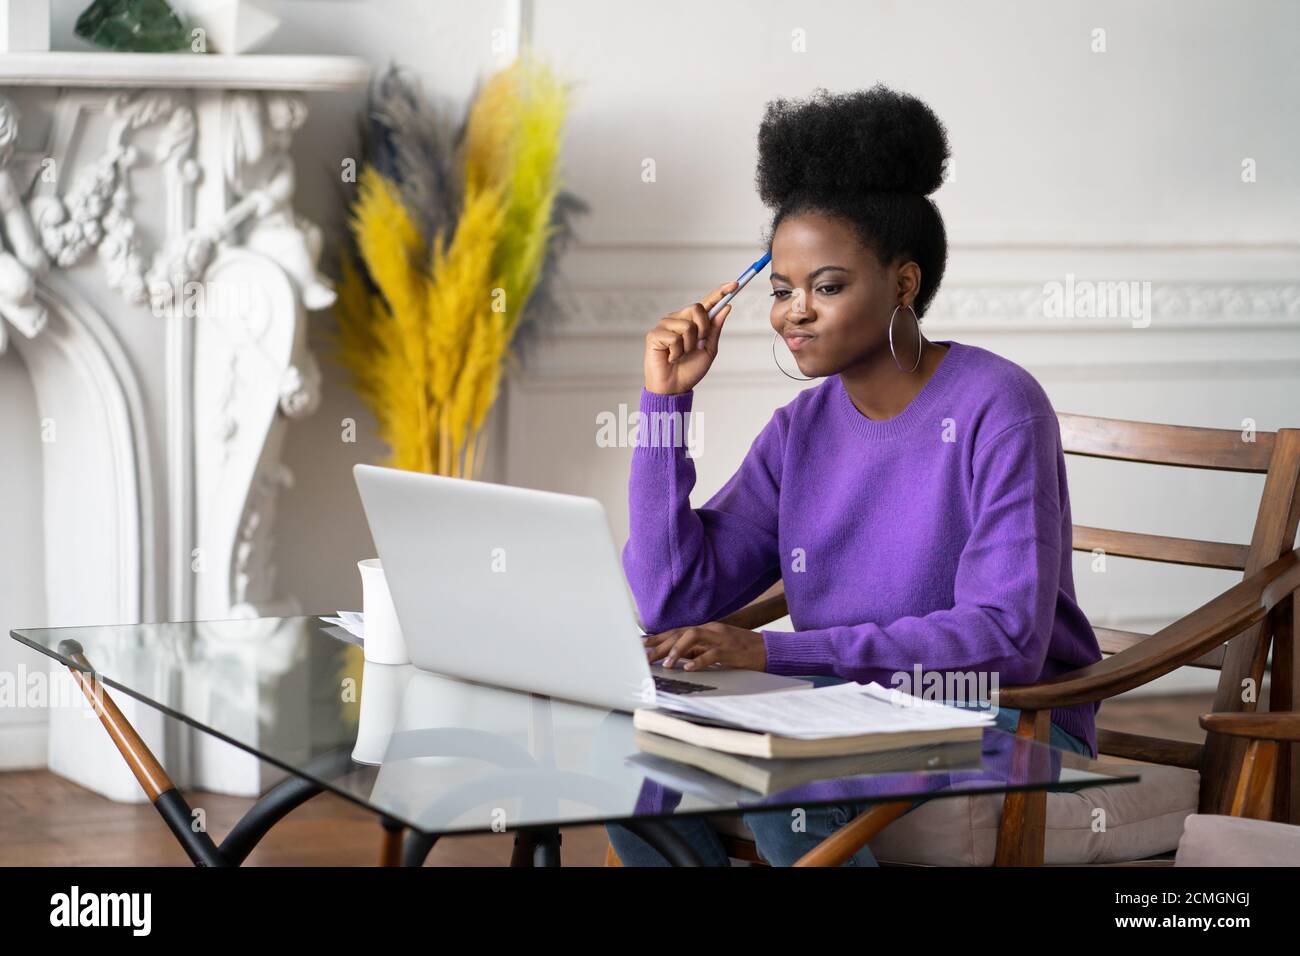 Femme afro-américaine du millénaire avec le visage mécontent de travailler et de regarder l'ordinateur portable, ayant des problèmes de logiciels opérationnels, agacé par la lenteur Banque D'Images